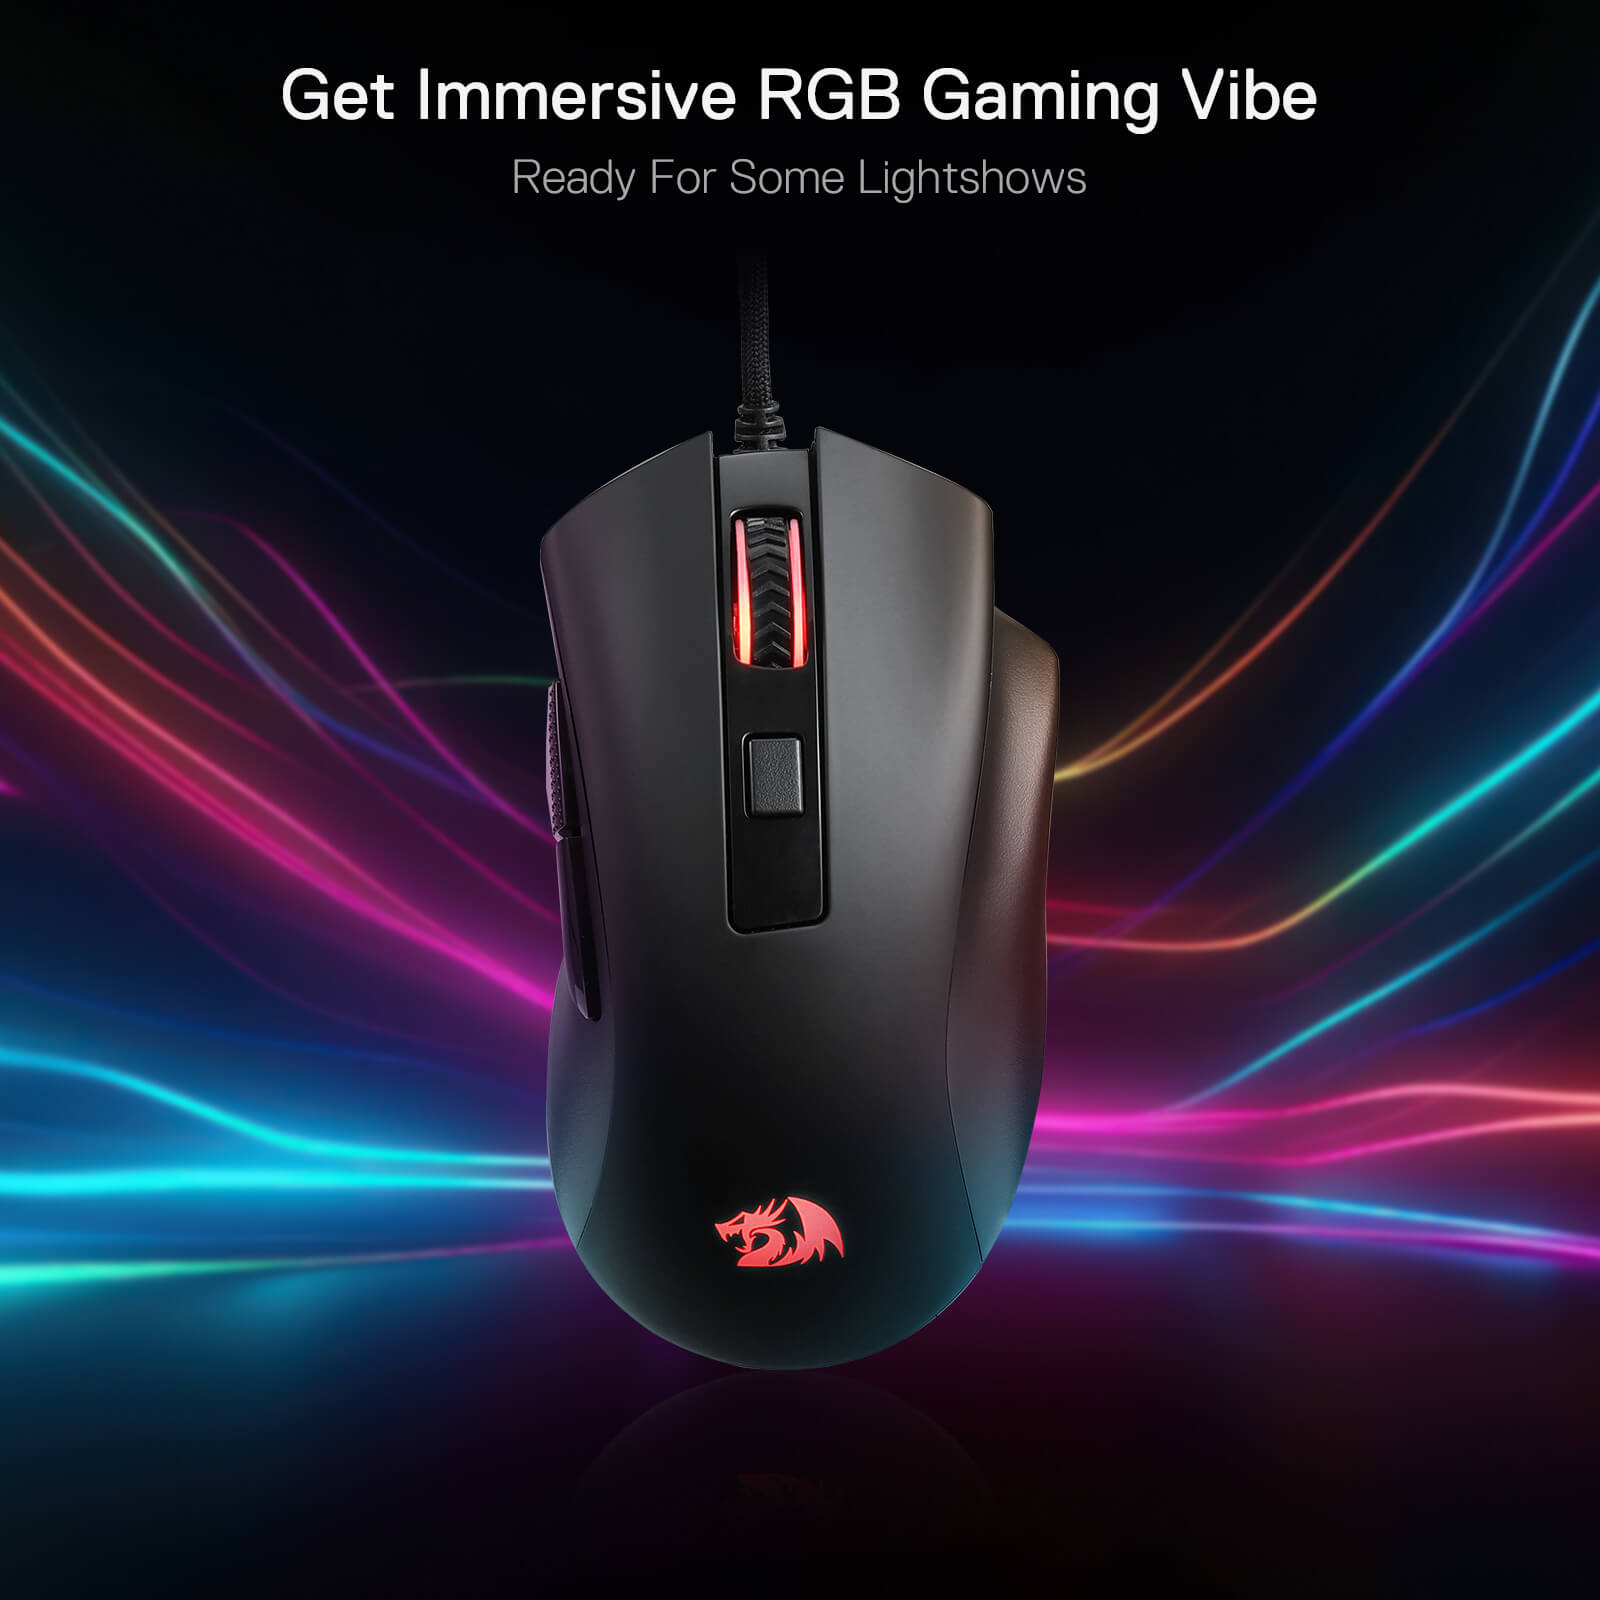 Redragon M993 RGB Gaming Mouse